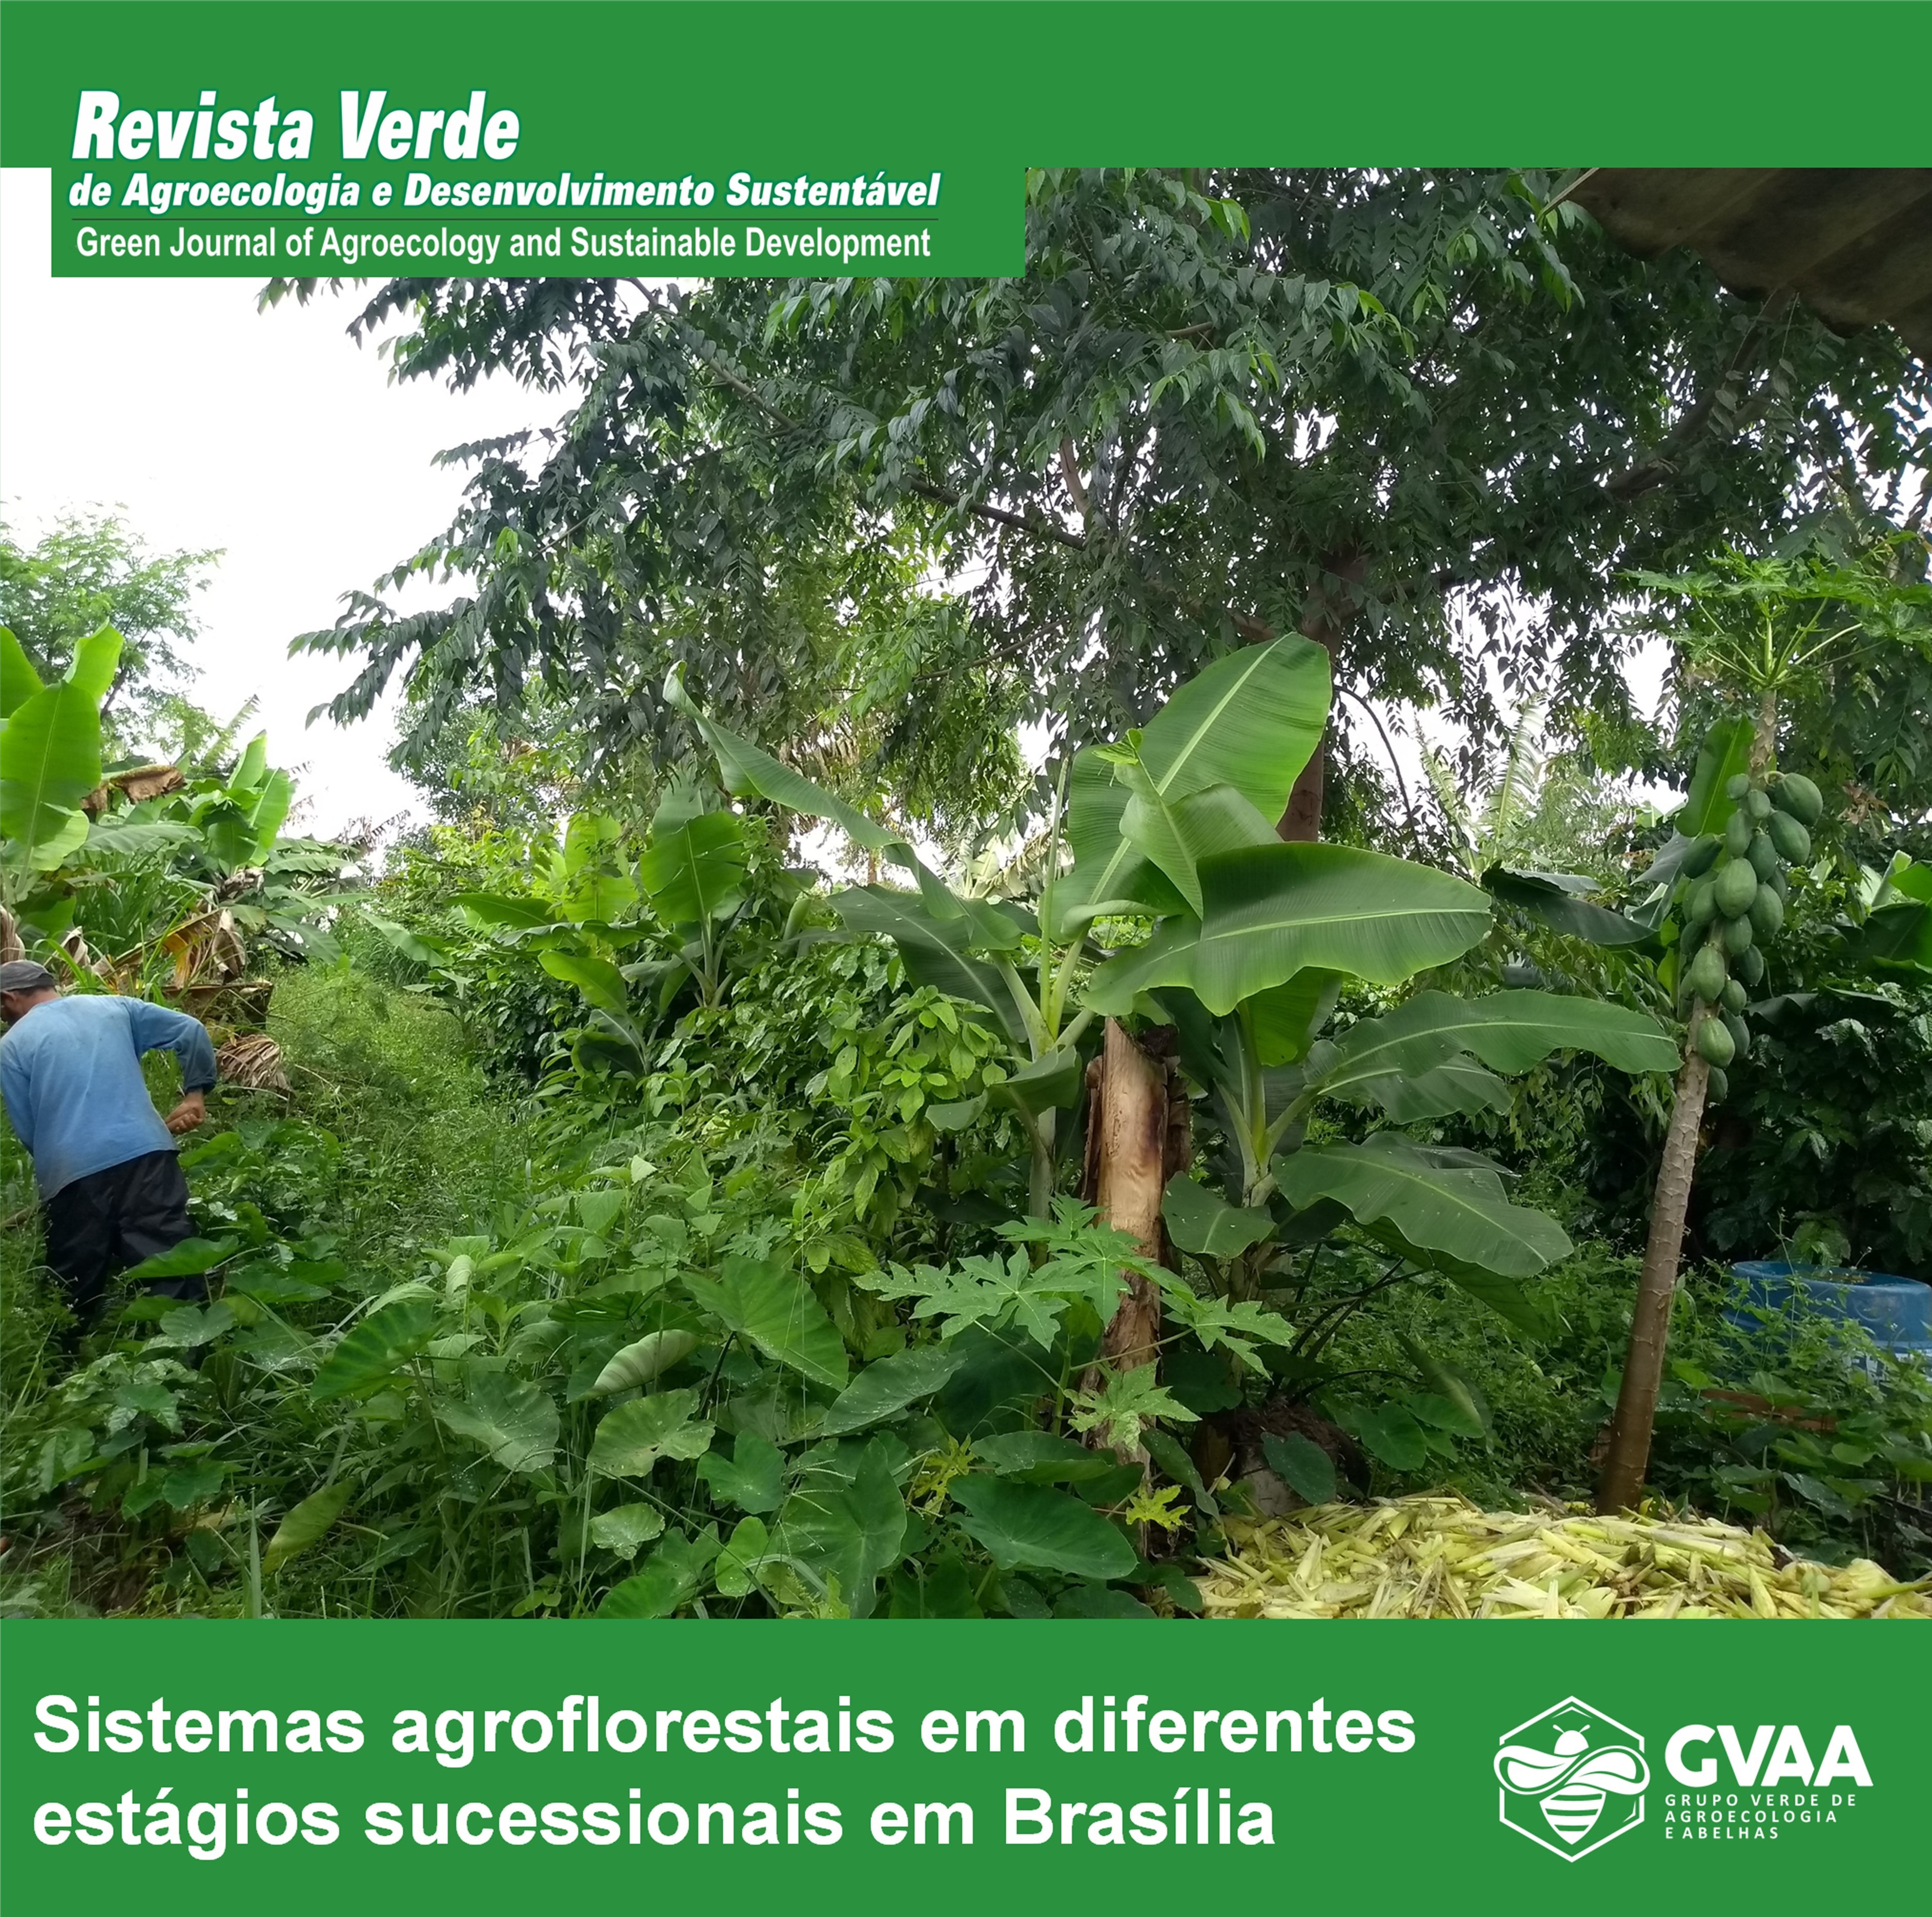 Características químicas, físicas e microbiológicas de sistemas agroflorestais em diferentes estágios sucessionais em Brasília